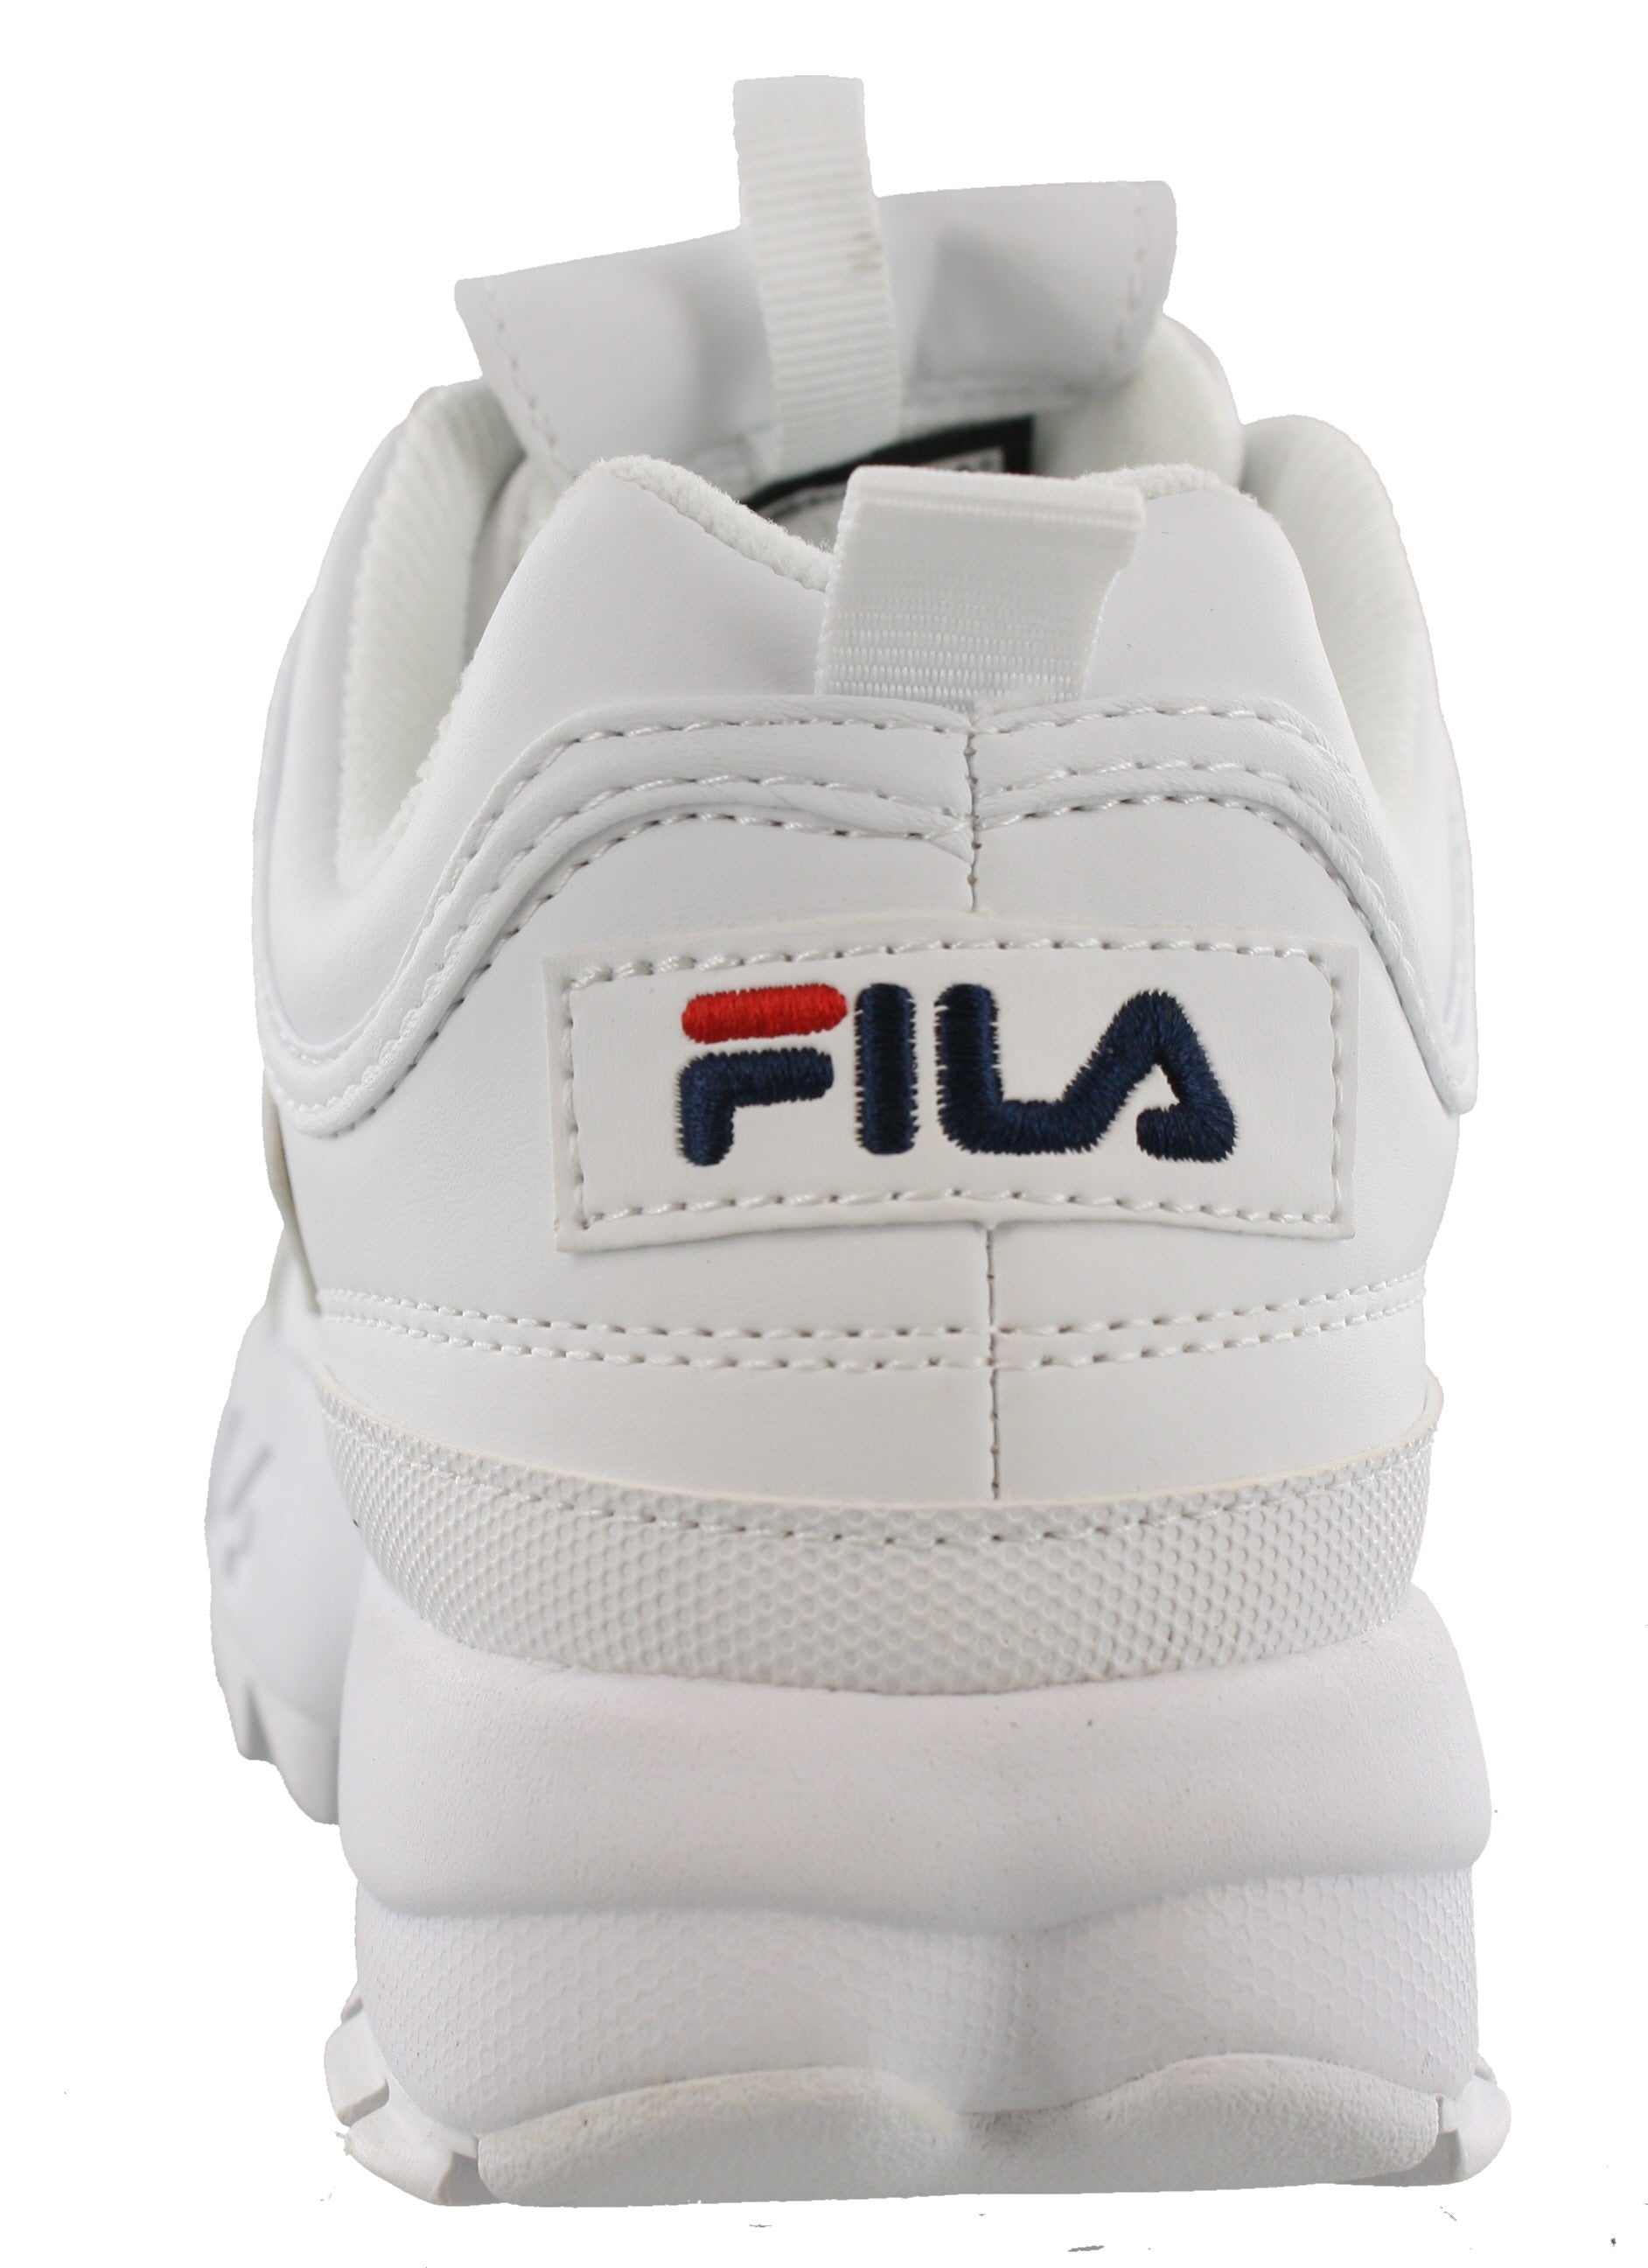 Fila Disruptor II Premium Chunky Sneakers - Women's